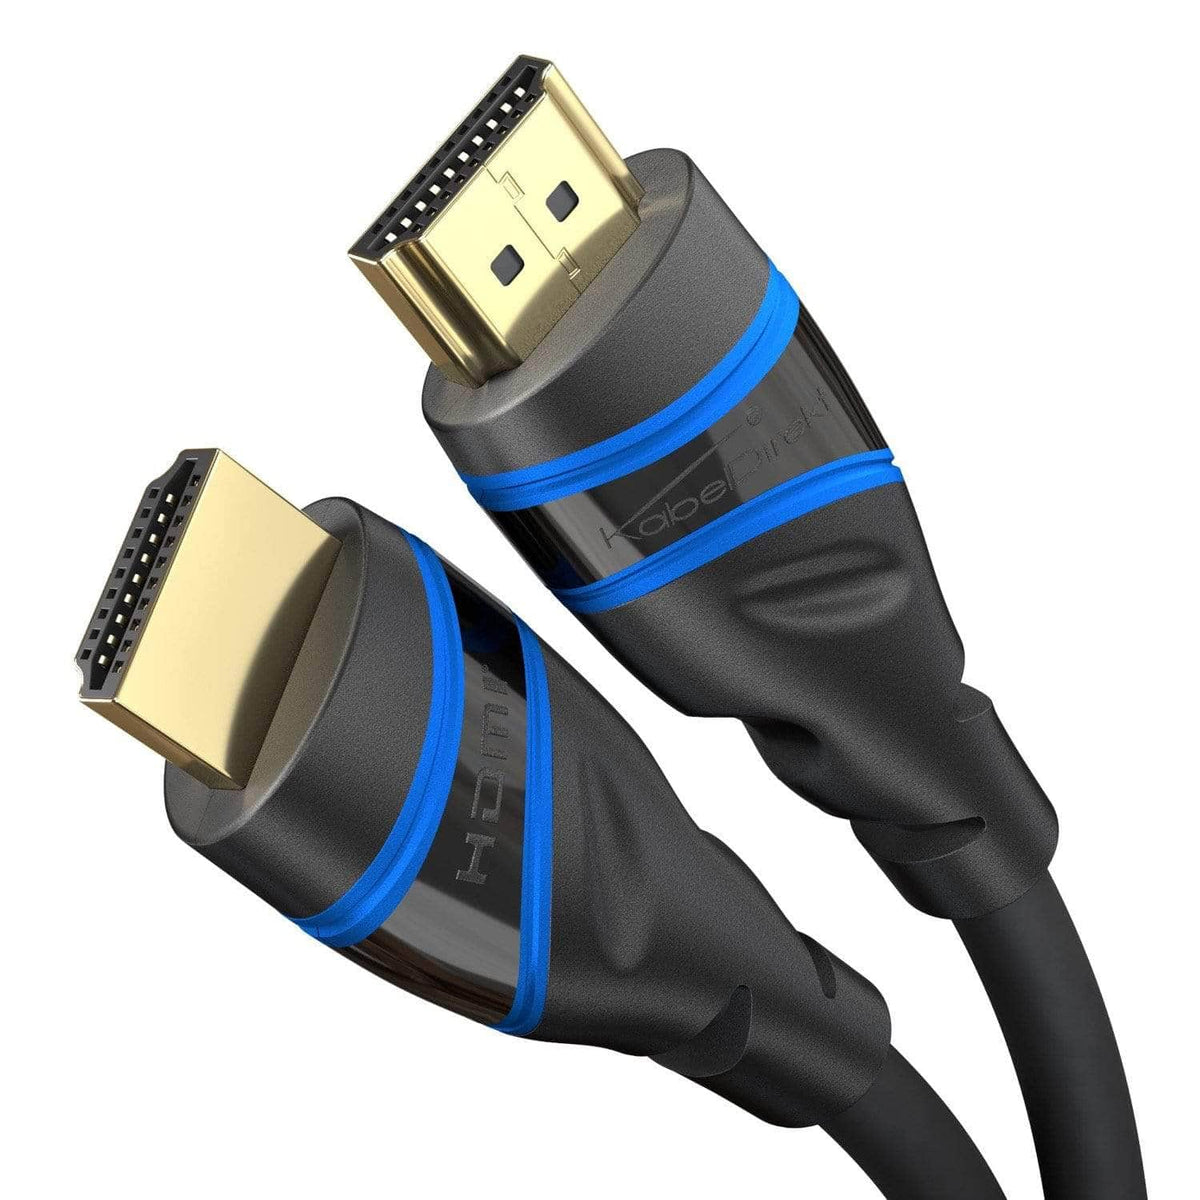 Daar Beperking verkwistend HDMI Kabel günstig online kaufen - Millionenfach verkauft »KabelDirekt